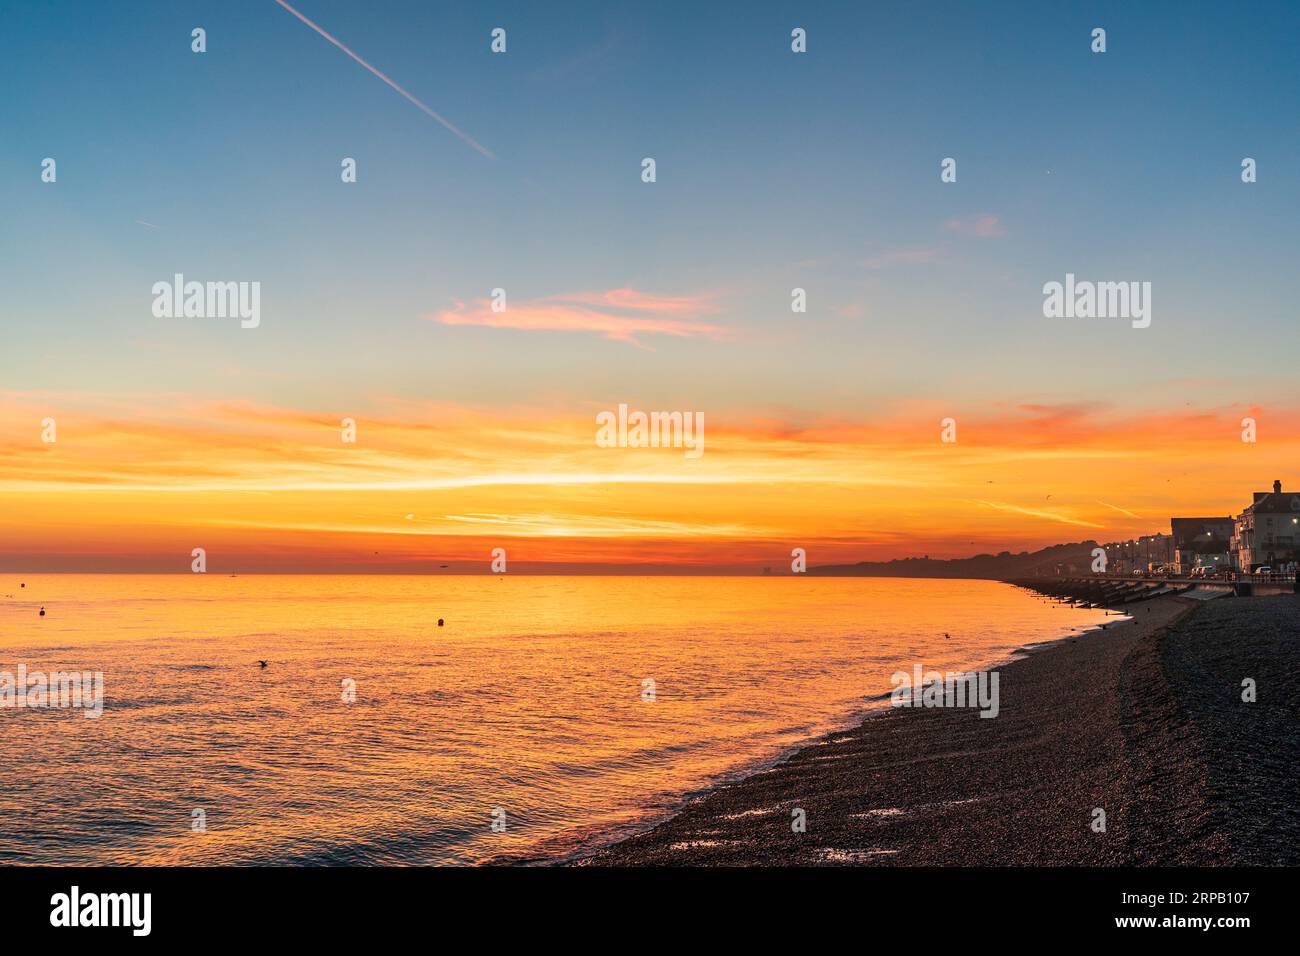 Le ciel de l'aube au-dessus de la plage au bord de la mer à Herne Bay sur la côte nord anglaise du Kent. Un ciel bleu avec une couche vive de nuages rouges et oranges près de l'horizon, l'orange se reflétant dans la mer très calme. Banque D'Images